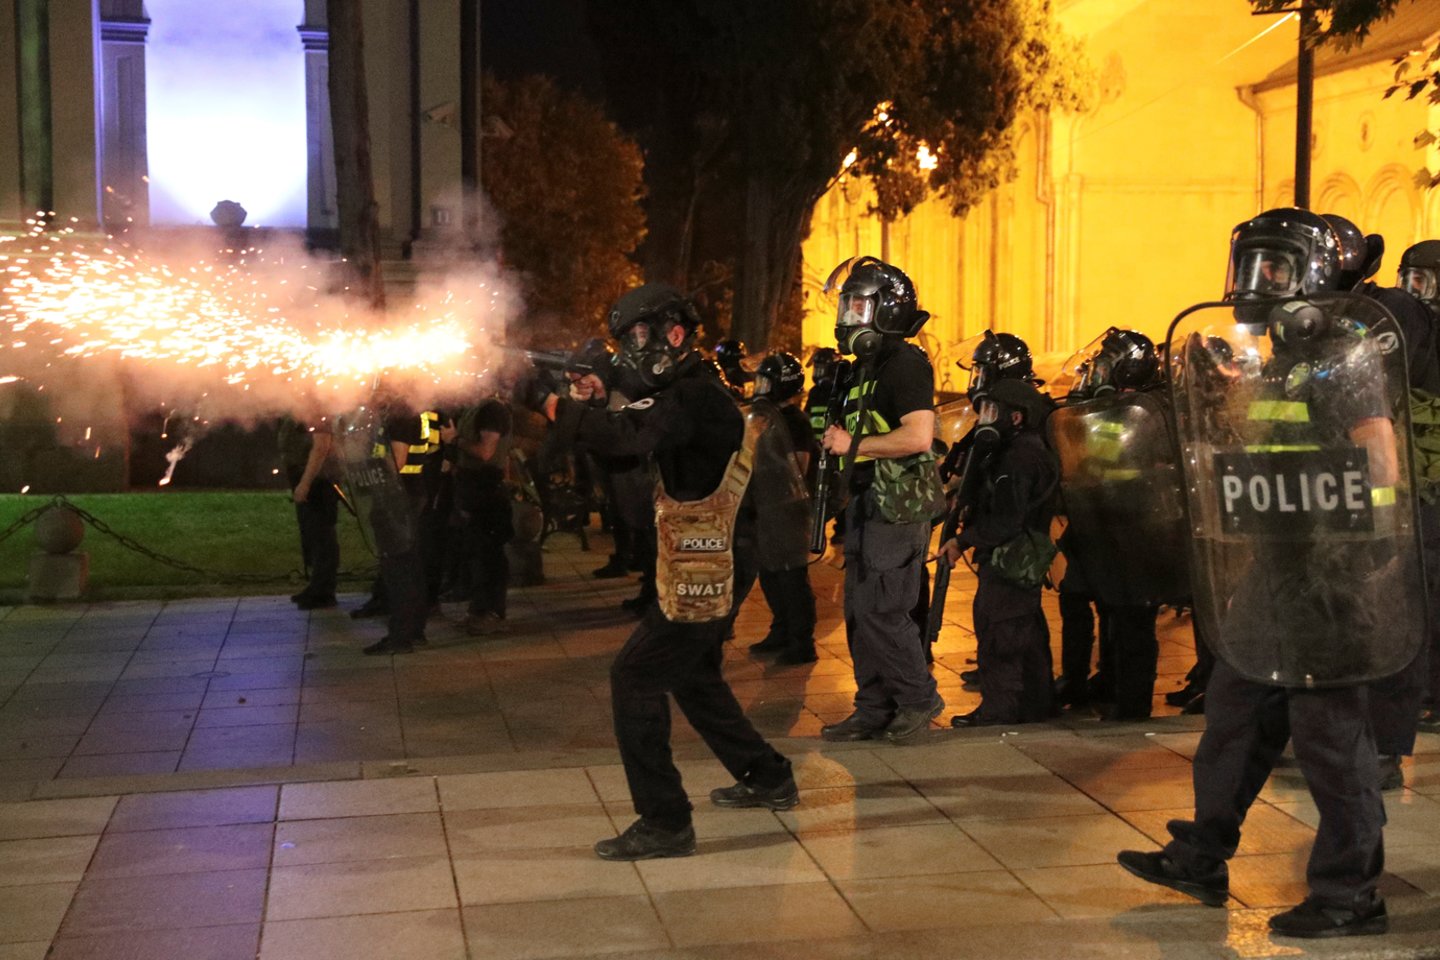  Sakartvelo sveikatos apsaugos ministerija pranešė, kad buvo hospitalizuoti 38 policininkai ir 14 protestuotojų, nukentėjusių per neramumus Rustavelio prospekte. <br> Reuters/Scanpix nuotr.